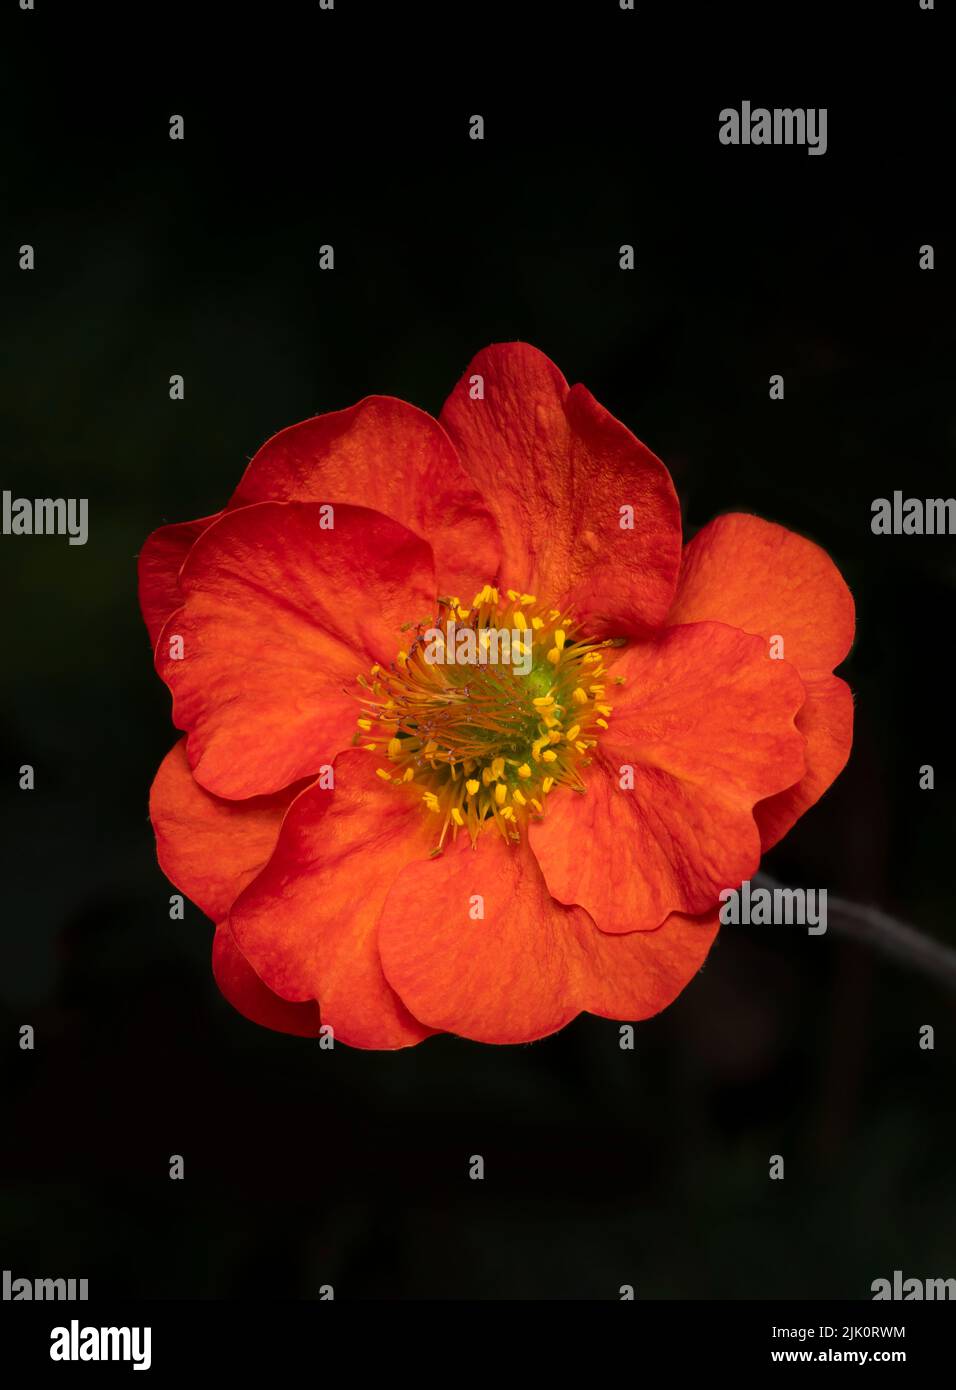 Un primer plano de una hermosa flor geum de color rojo brillante, fotografiada sobre un fondo oscuro Foto de stock